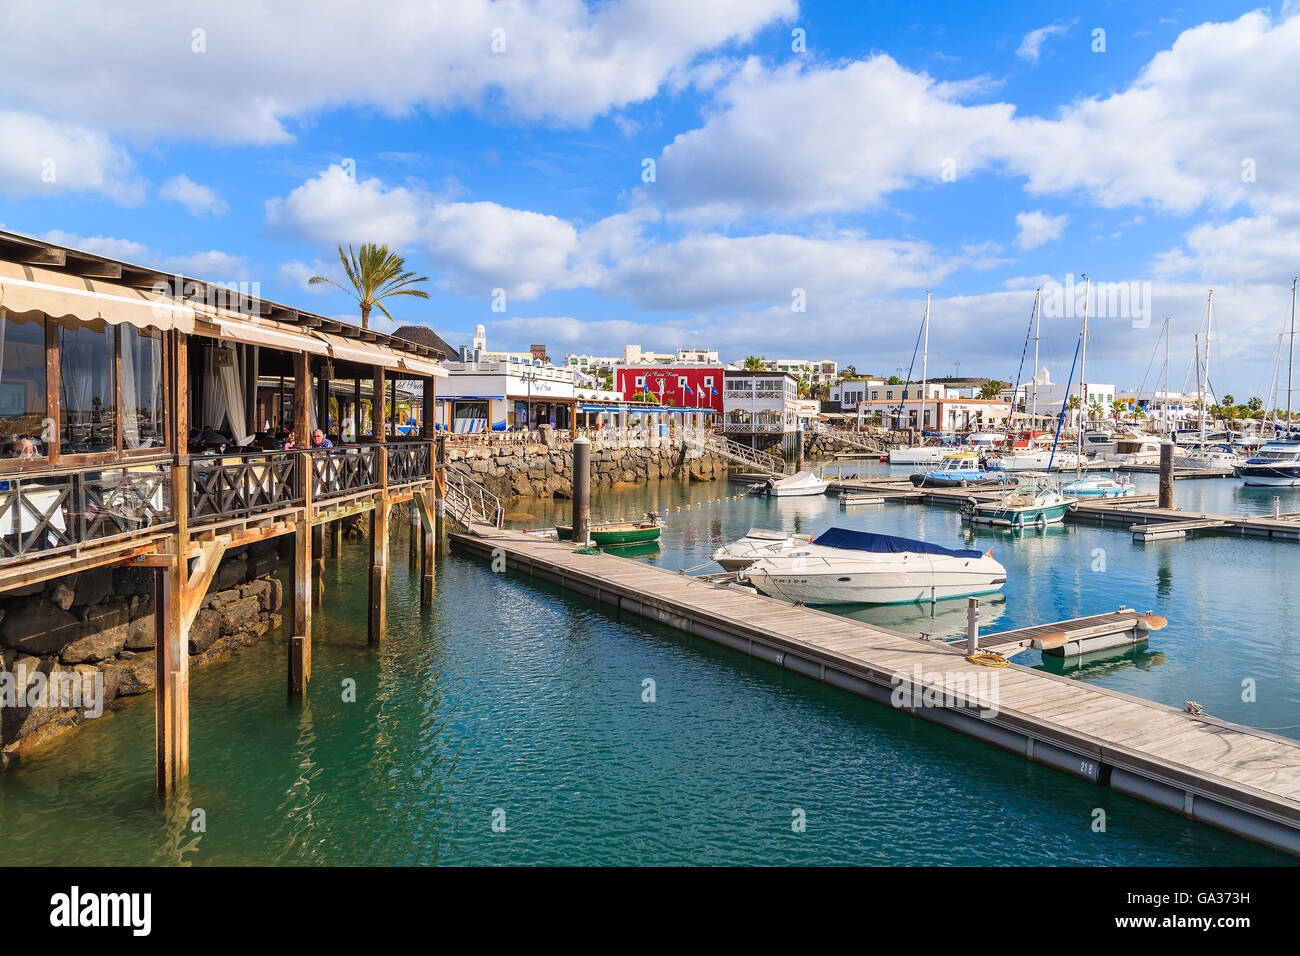 MARINA RUBICON, Lanzarote Island- Jan 17, 2015: Pier e ristorante in Rubicone porta. Le isole Canarie sono molto popolare meta di vacanza grazie alla soleggiata clima tropicale tutto l'anno. Foto Stock